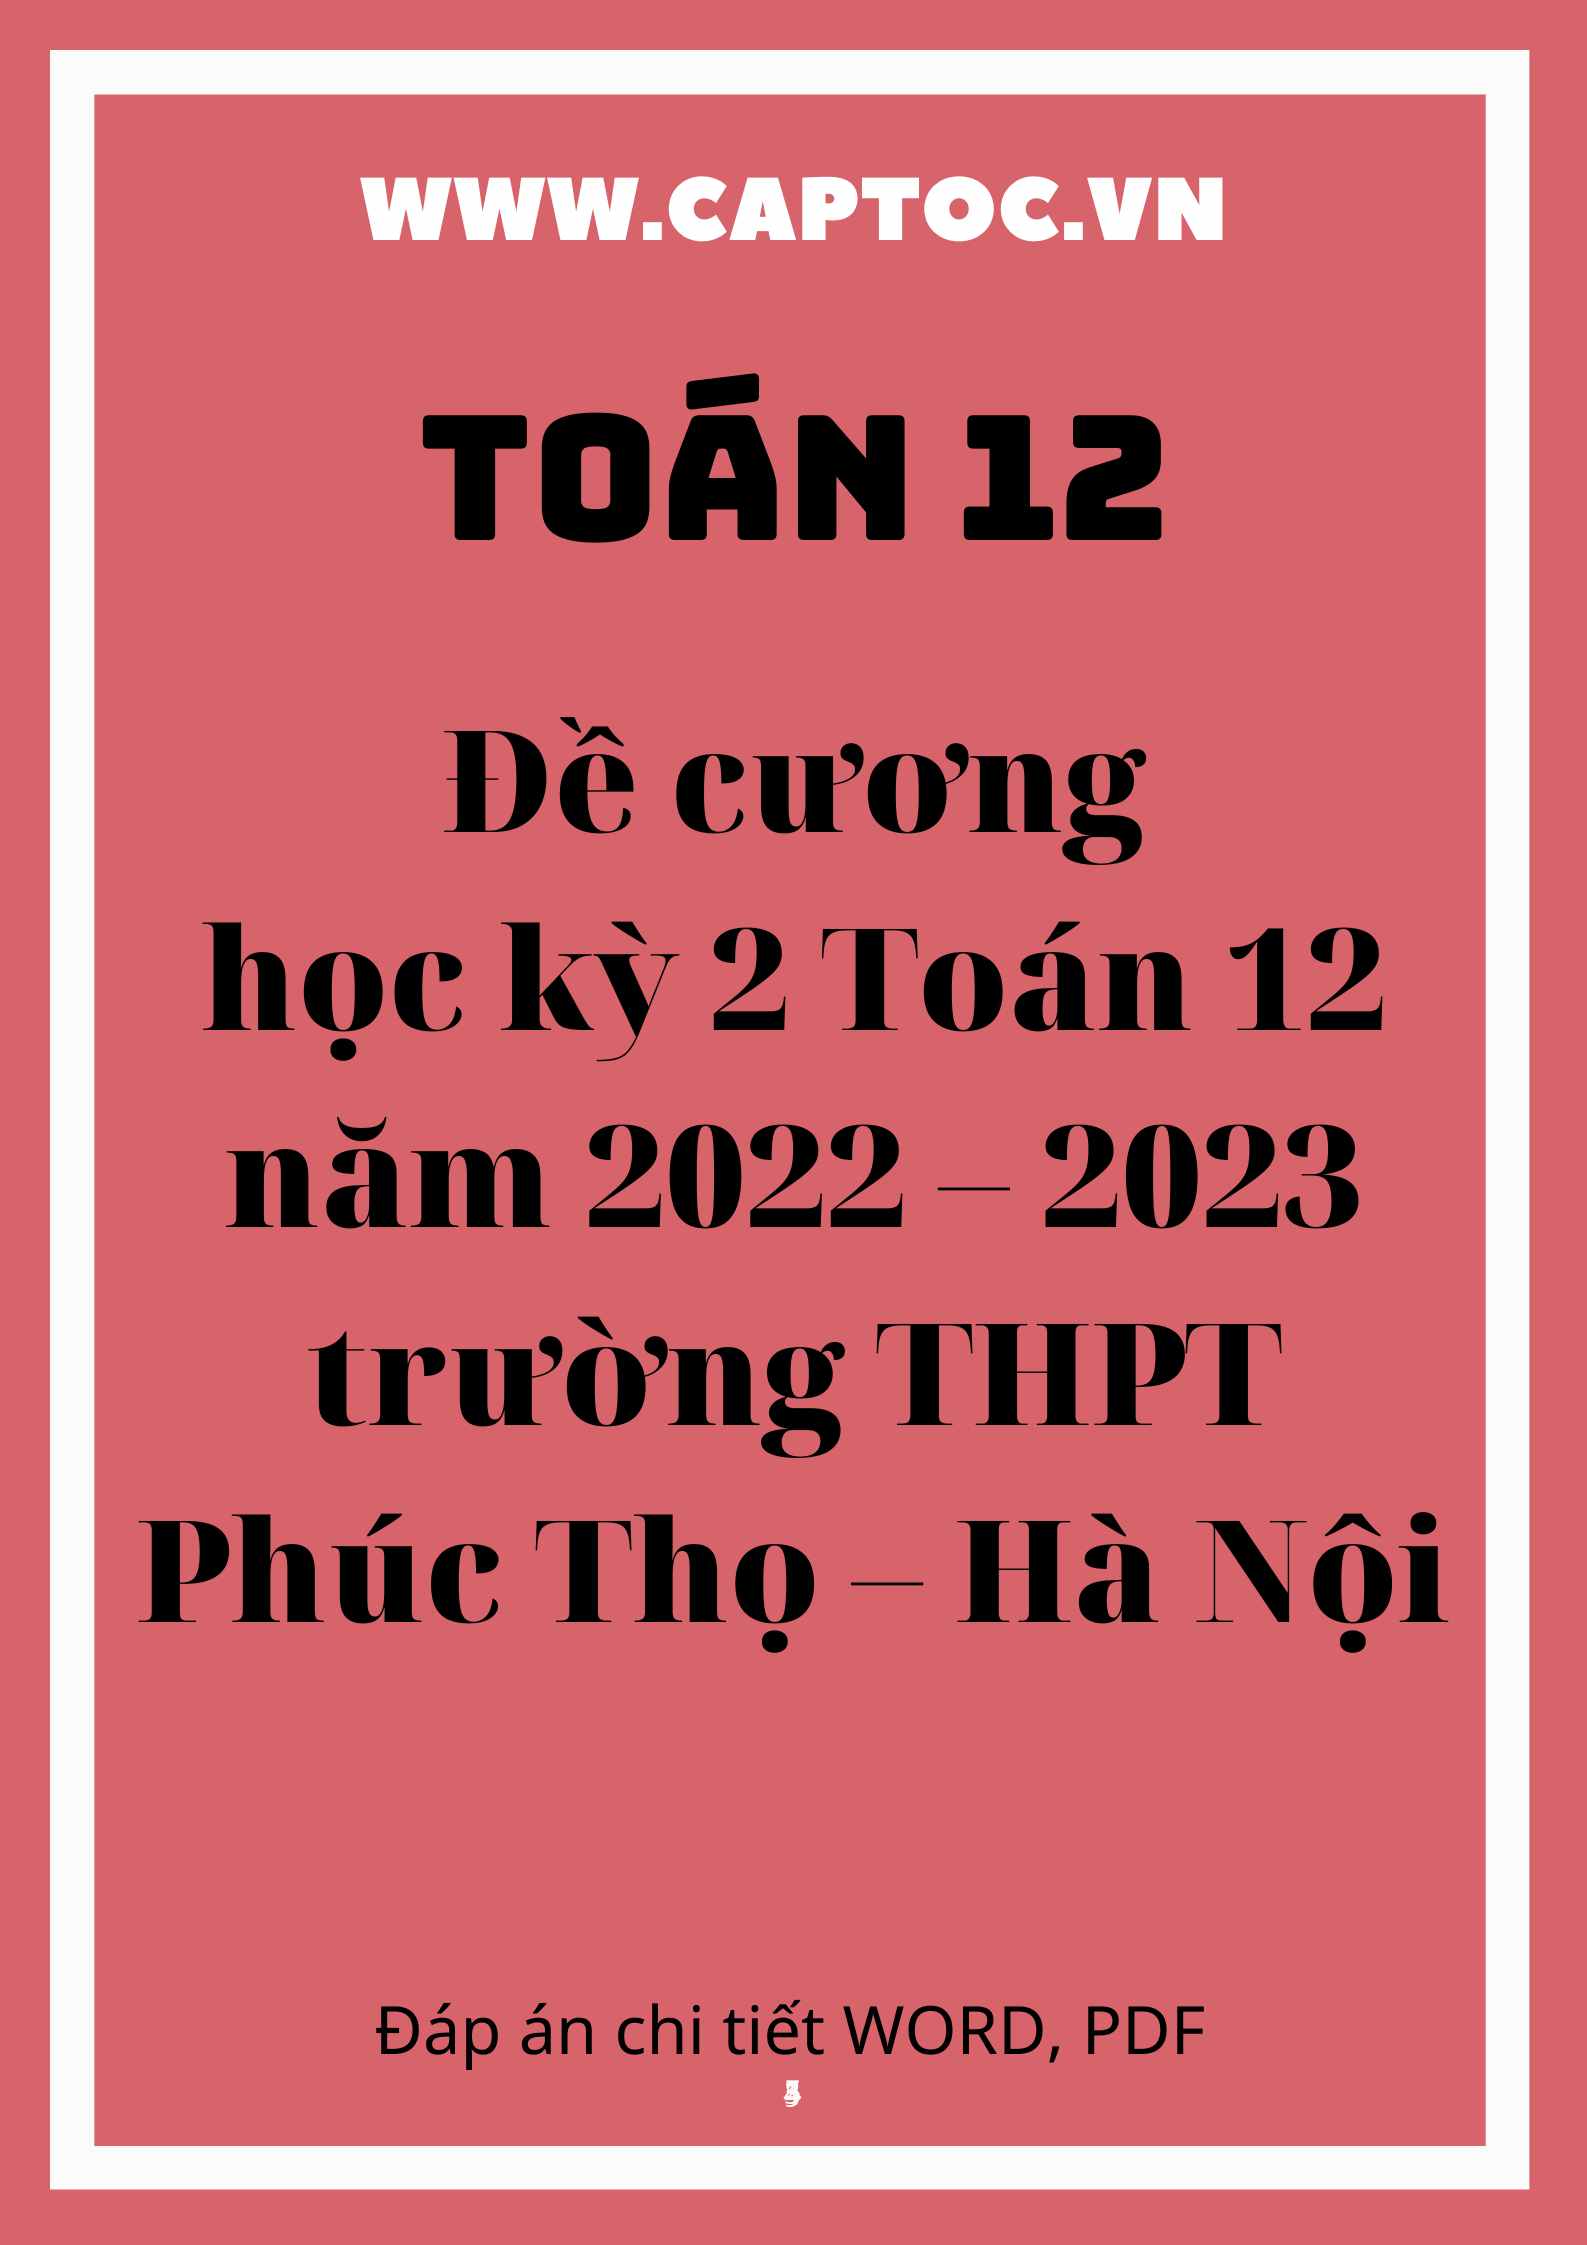 Đề cương học kỳ 2 Toán 12 năm 2022 – 2023 trường THPT Phúc Thọ – Hà Nội